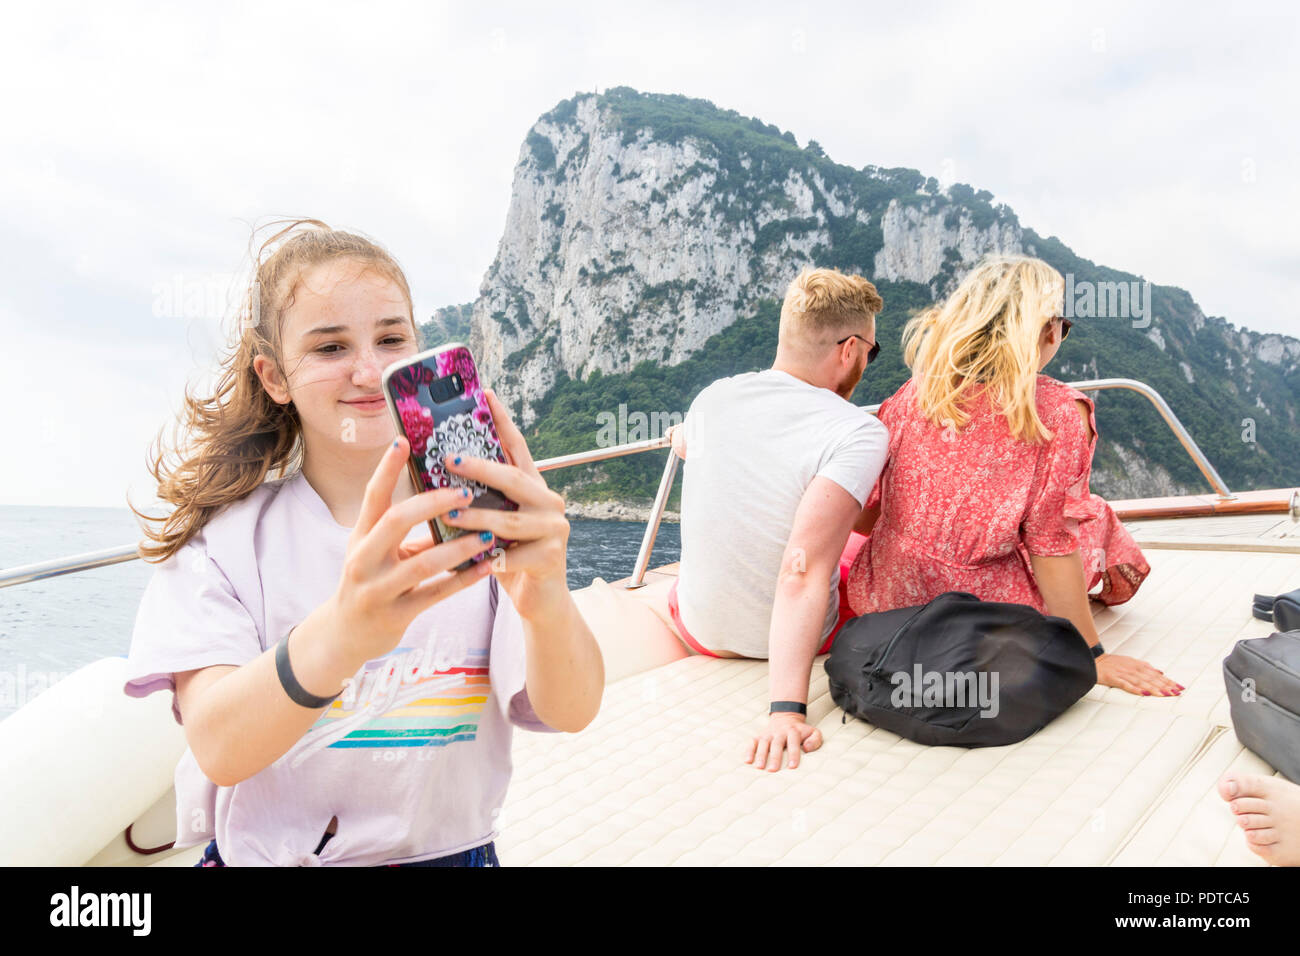 Mädchen nehmen einer selfie Boot, Meer Wasser Hintergrund, Konzept, Konzept, Amalfi Italien, glückliches Leben, Best Life, jugendlich Mädchen, Teenager Stockfoto